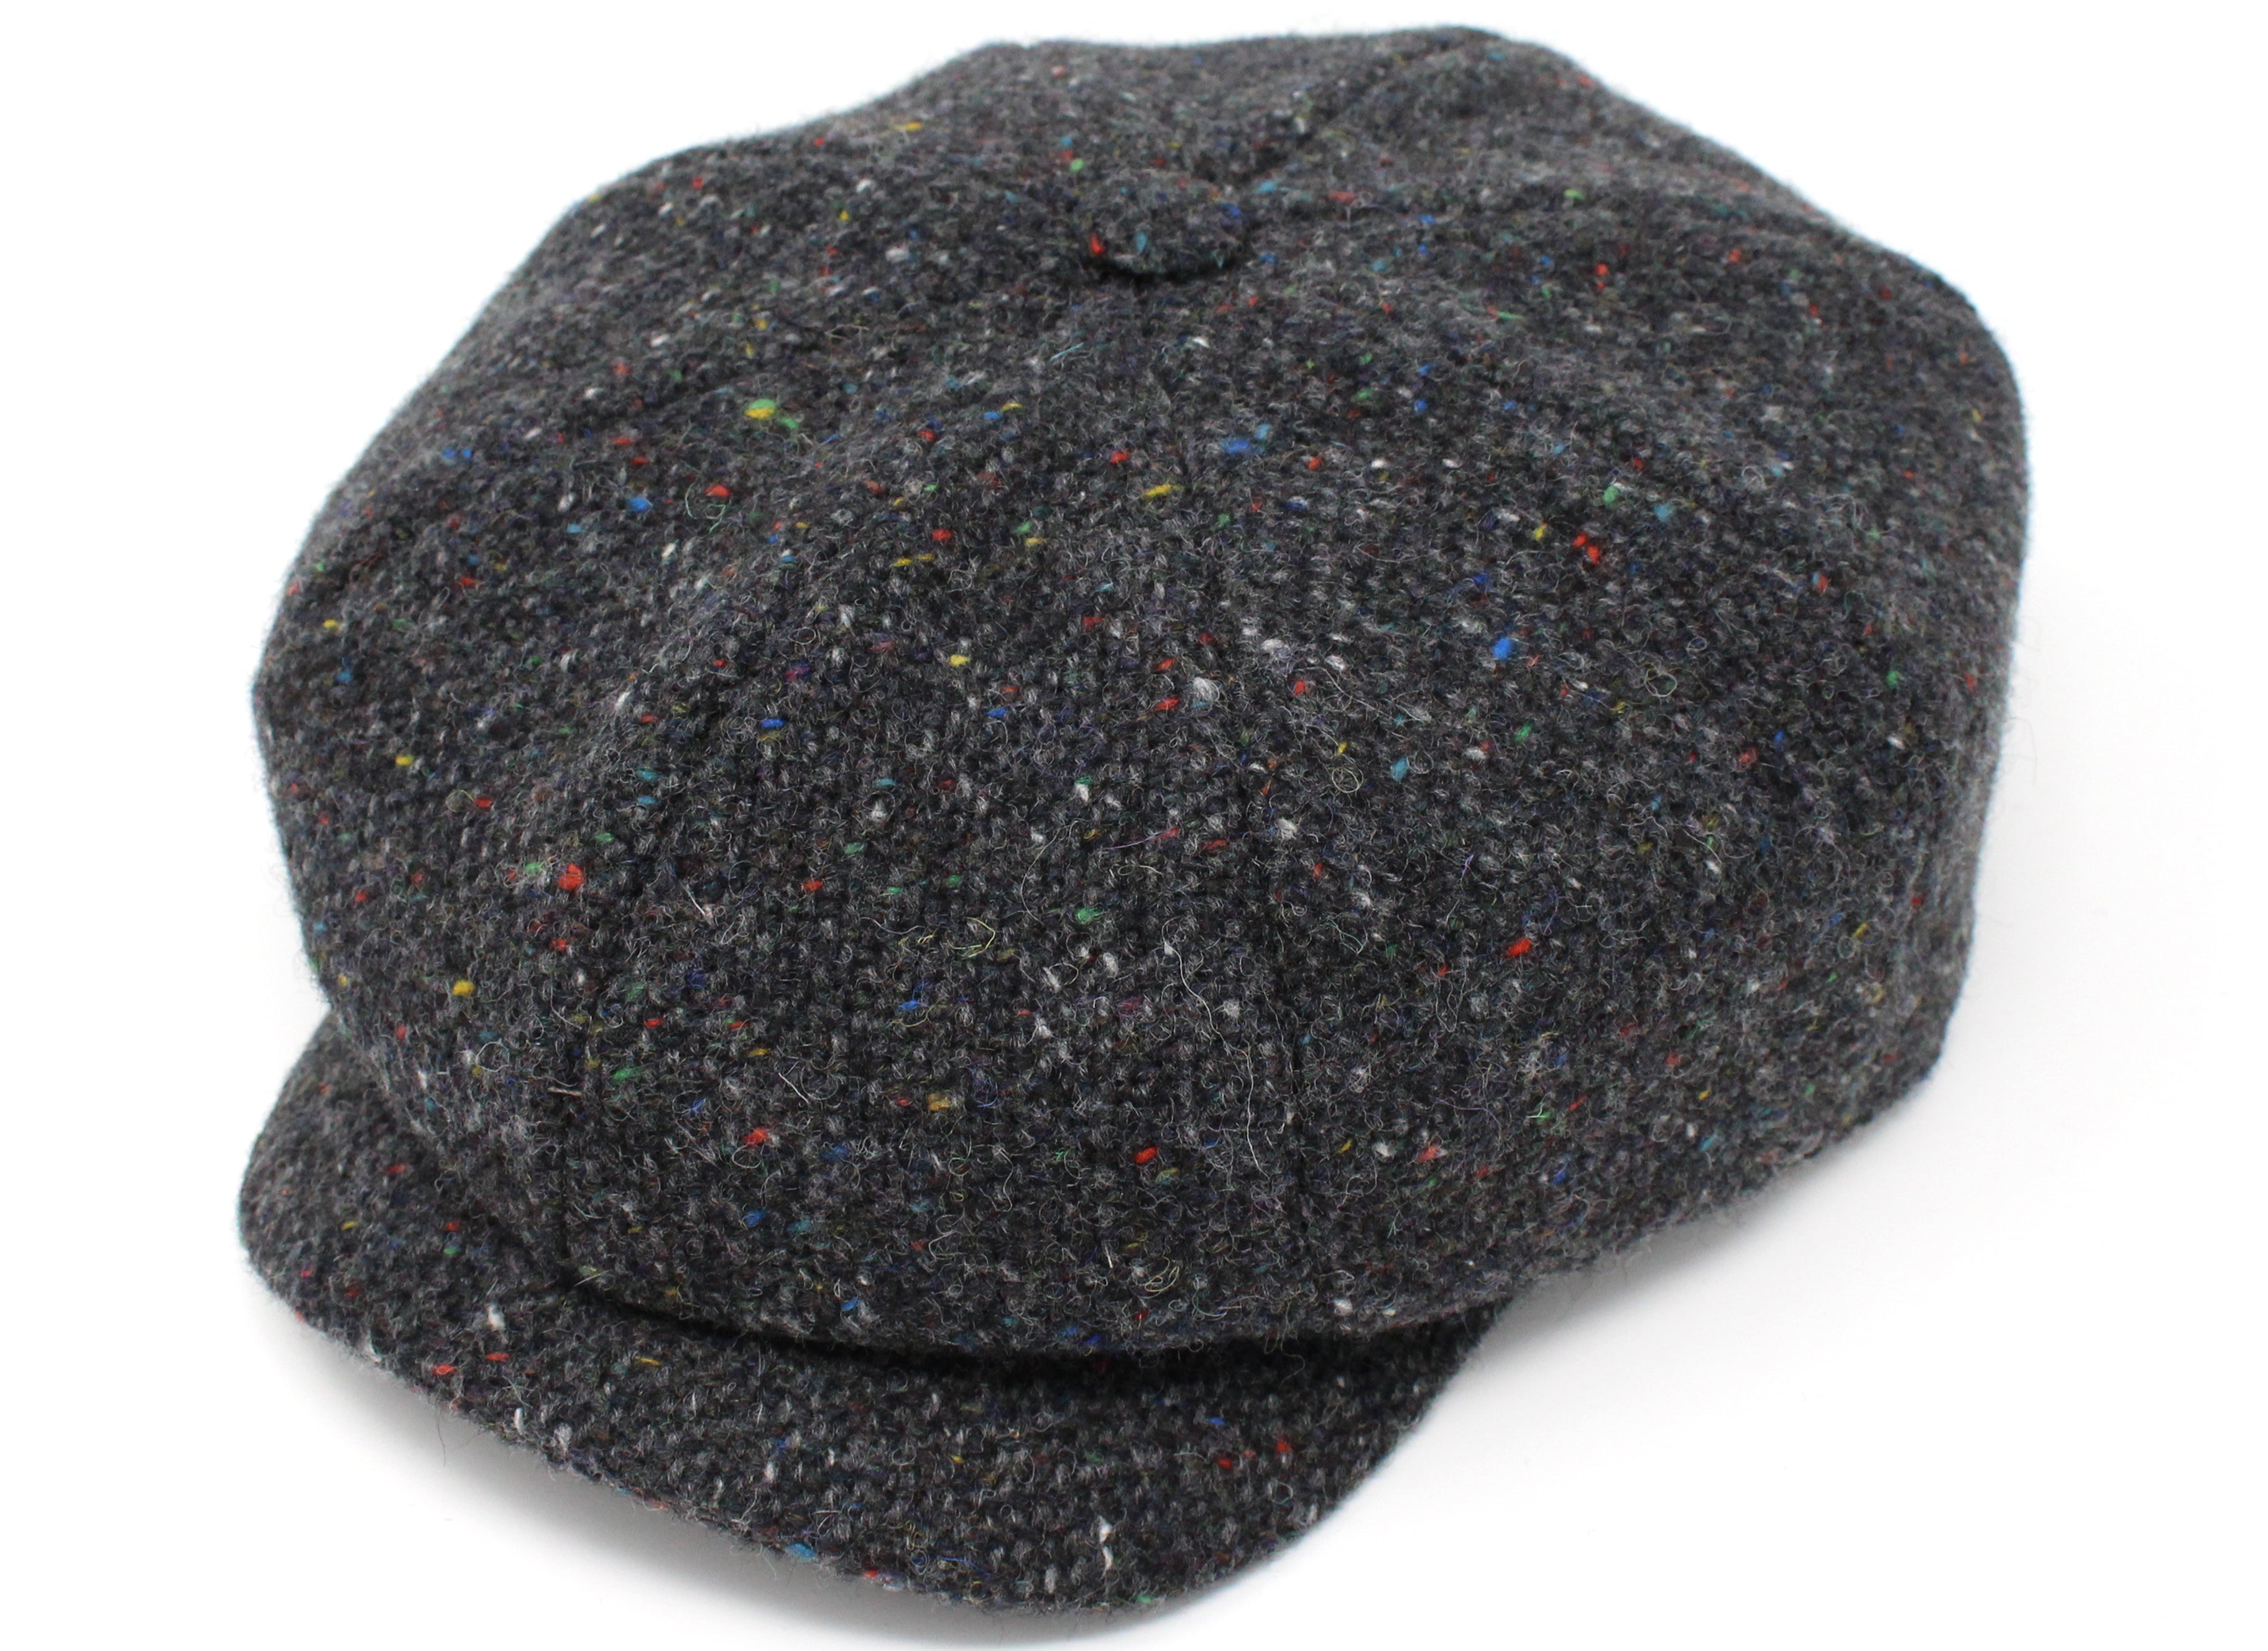 Hanna Hats JP Cap Tweed - Dark Grey Charcoal Fleck Salt & Pepper